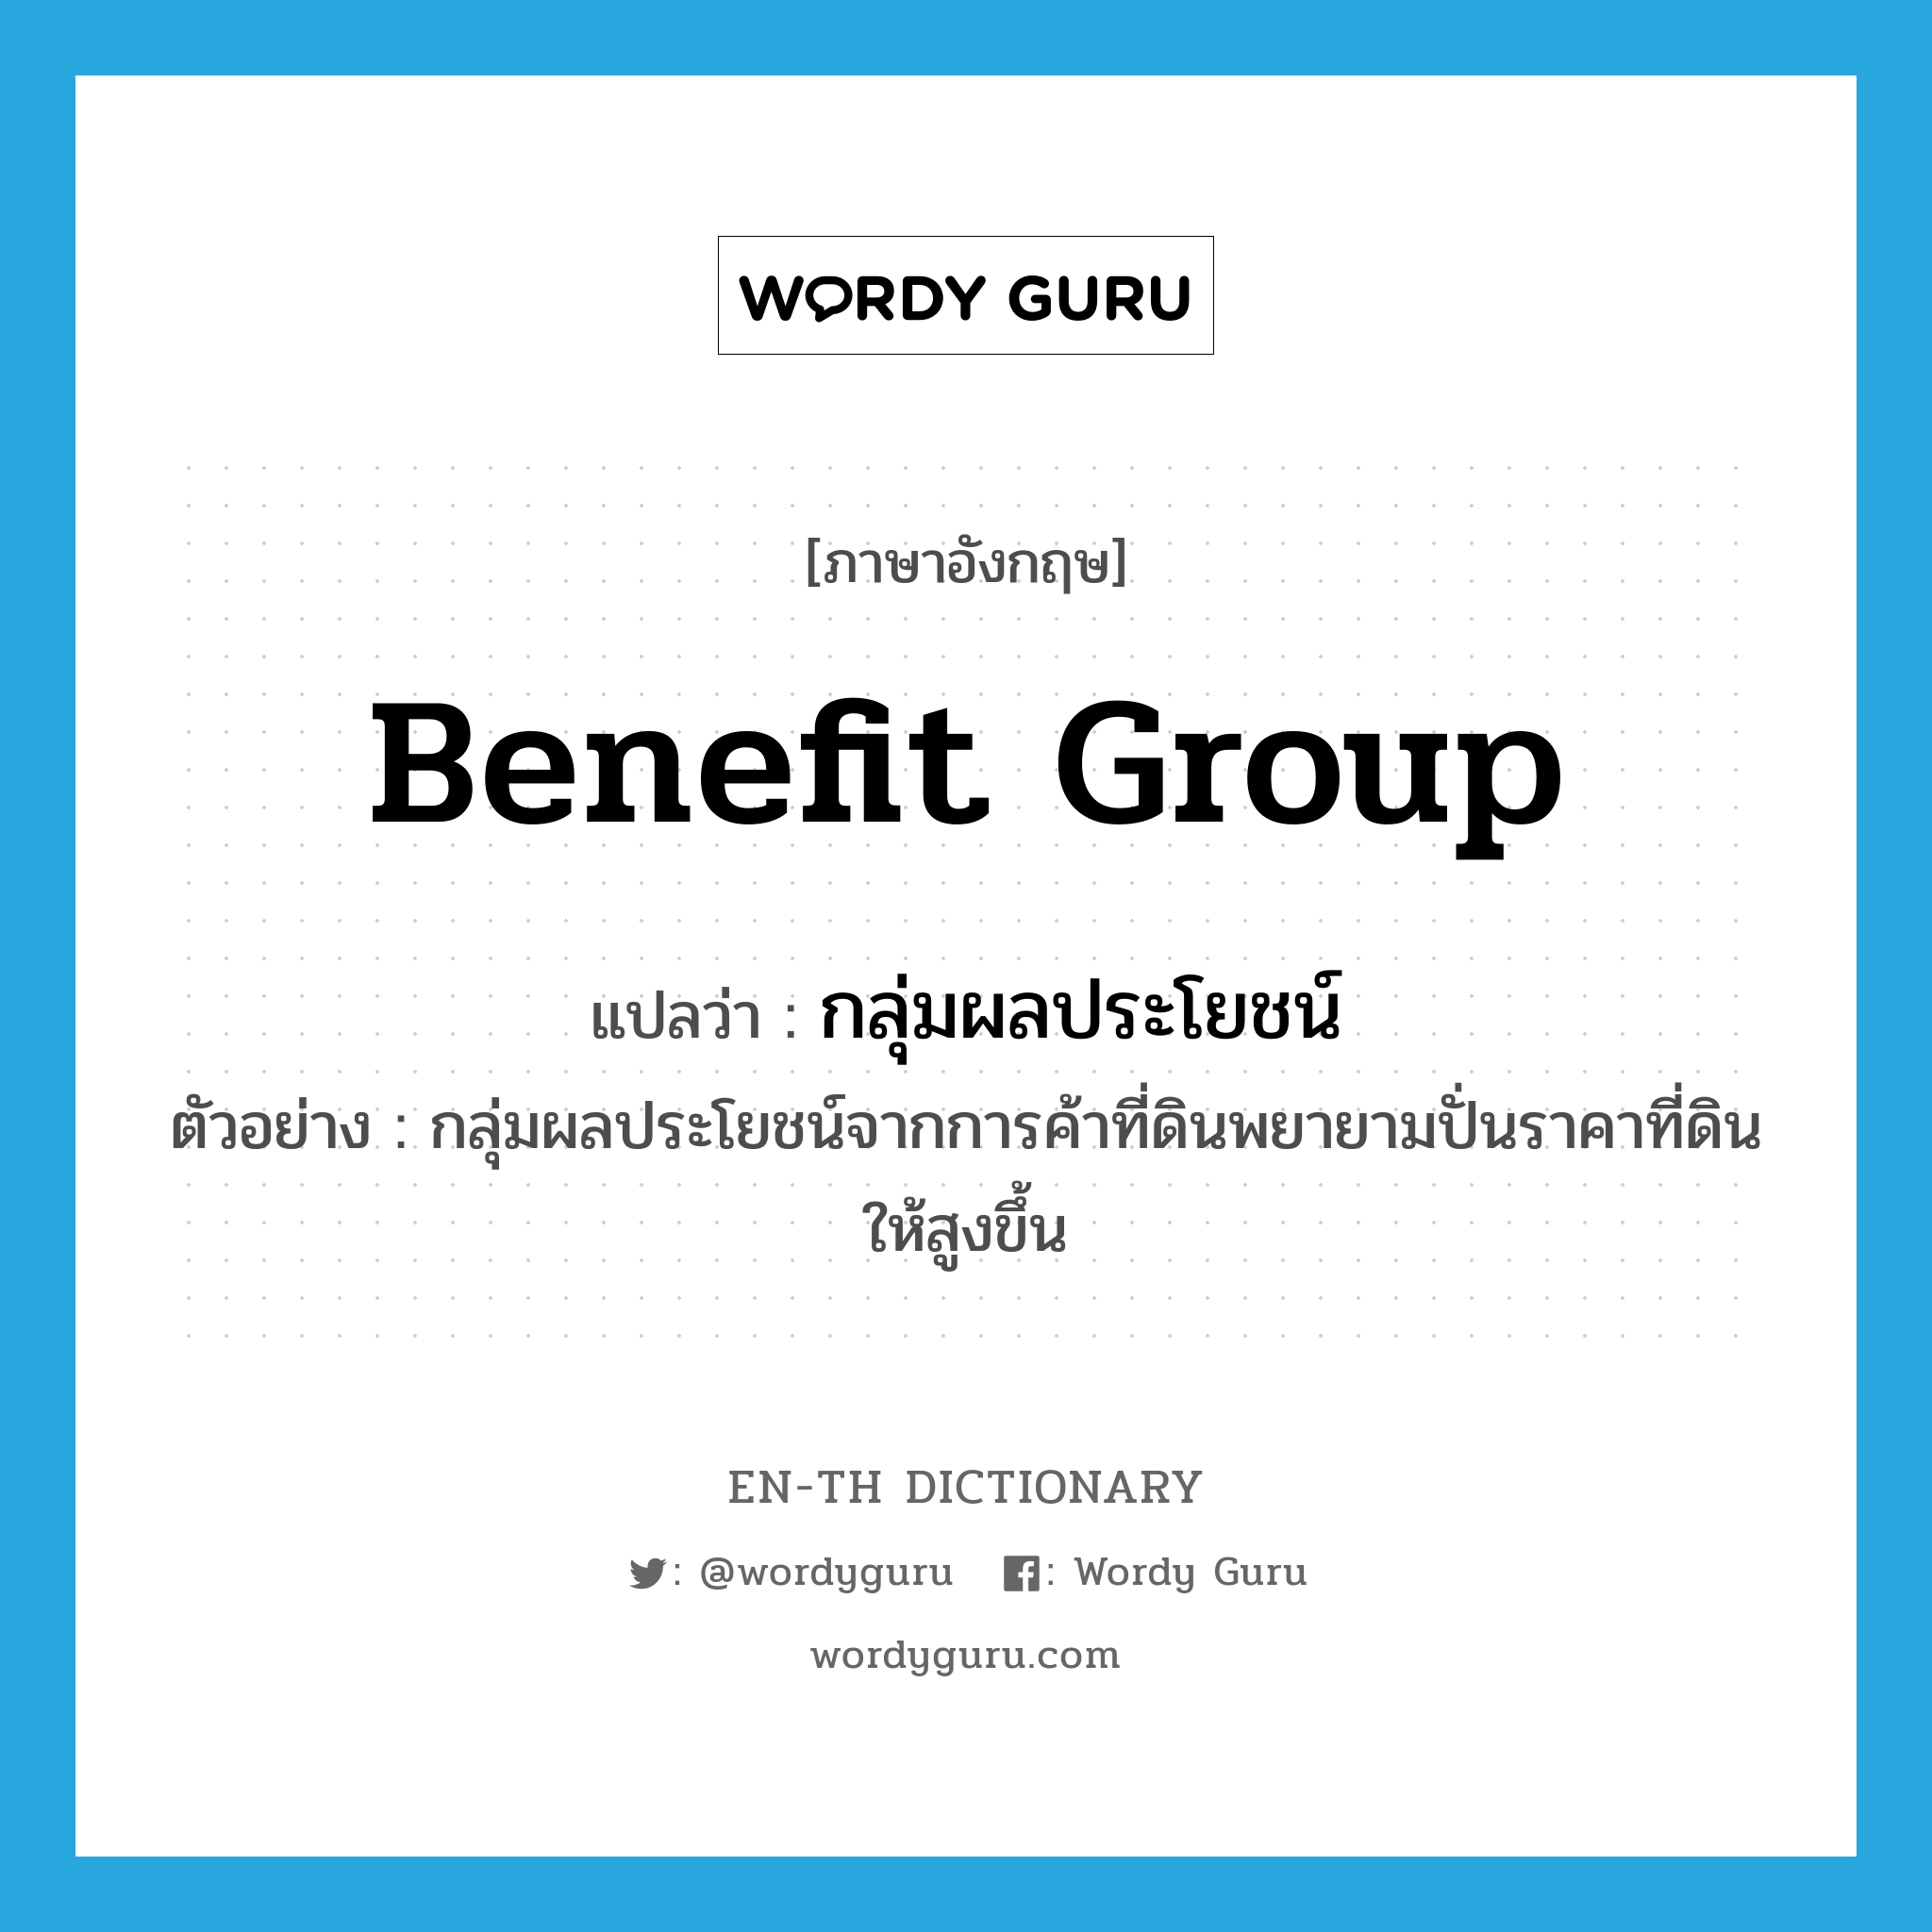 benefit group แปลว่า?, คำศัพท์ภาษาอังกฤษ benefit group แปลว่า กลุ่มผลประโยชน์ ประเภท N ตัวอย่าง กลุ่มผลประโยชน์จากการค้าที่ดินพยายามปั่นราคาที่ดินให้สูงขึ้น หมวด N